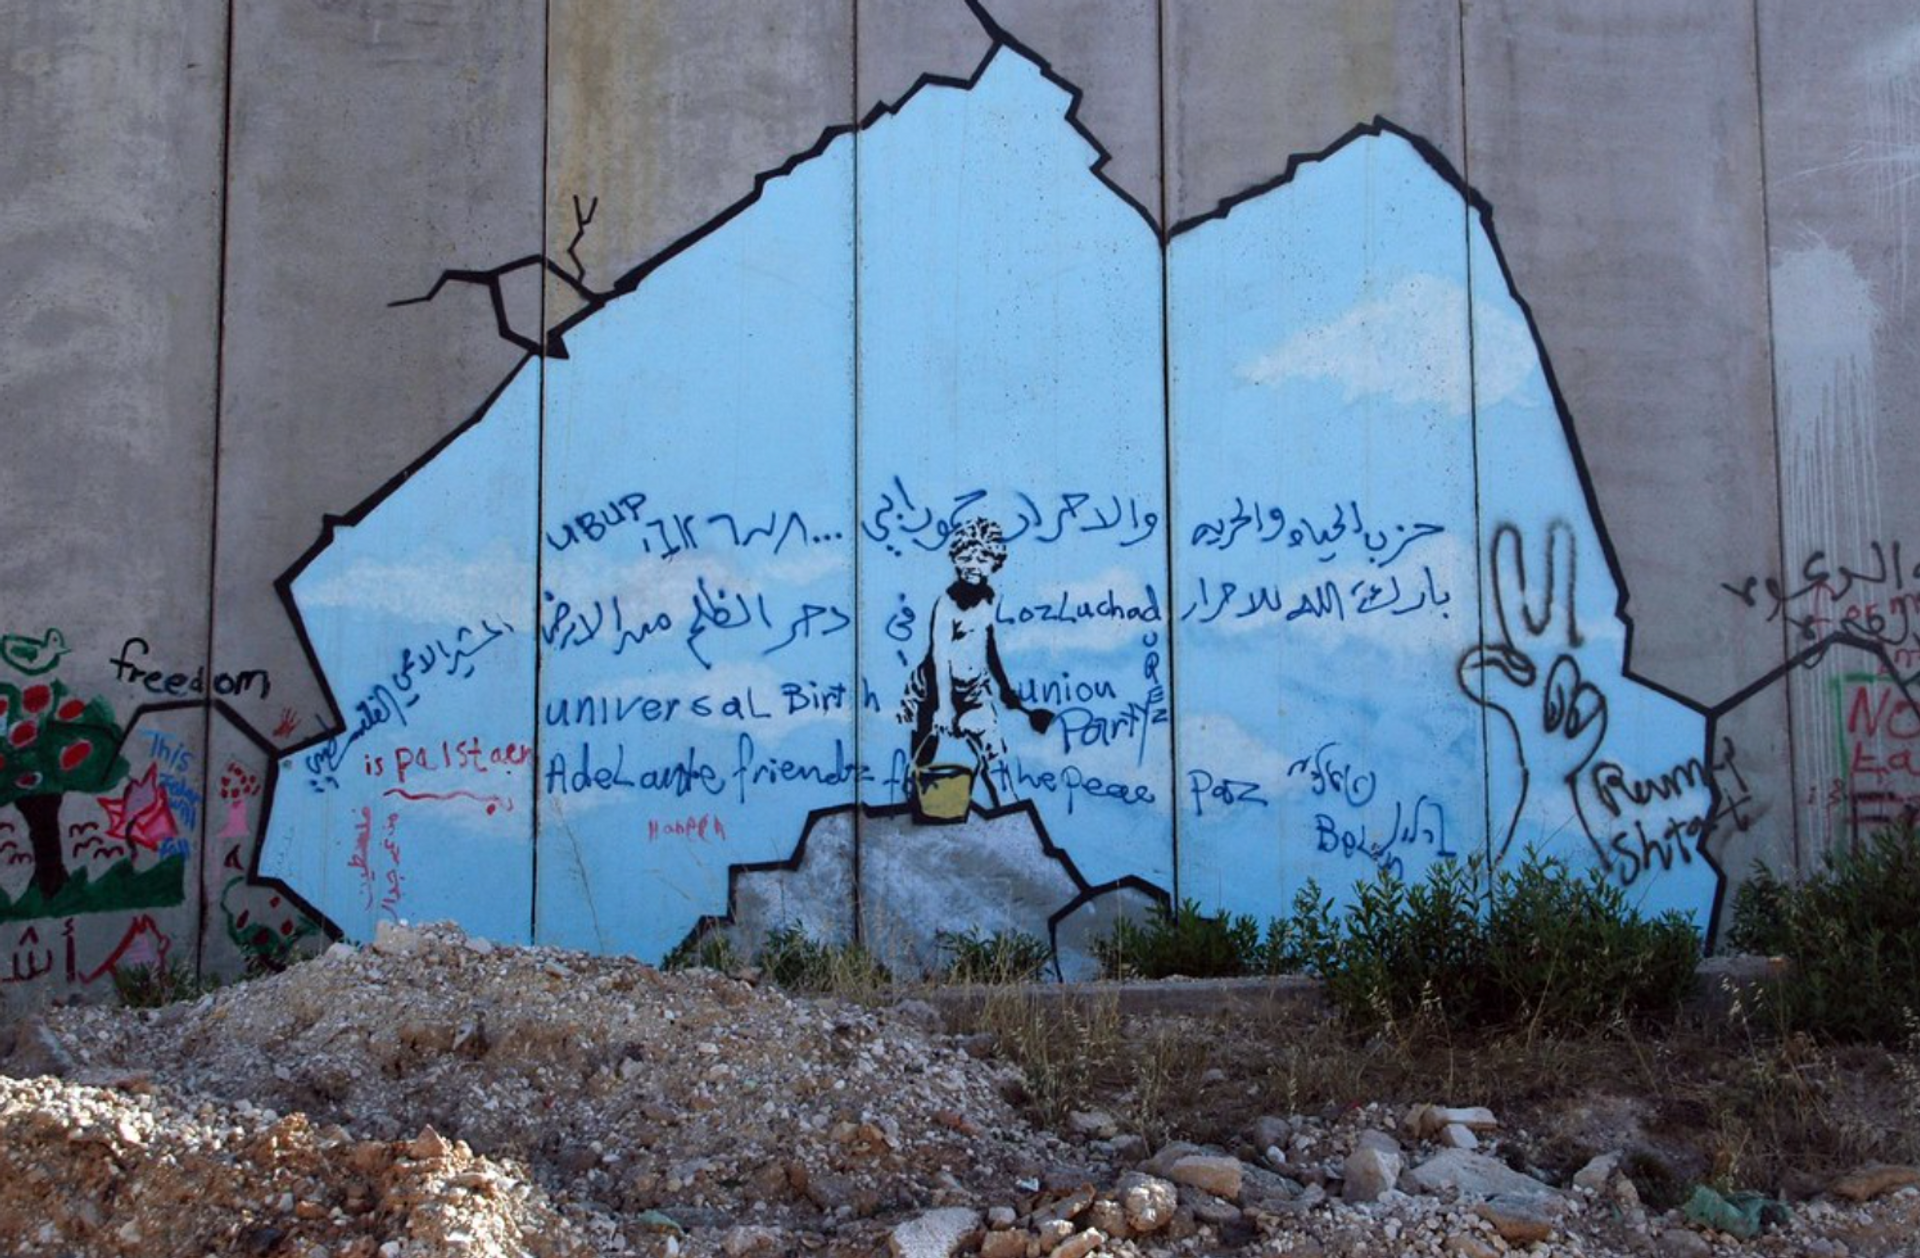 The Segregation Wall by Banksy - MyArtBroker